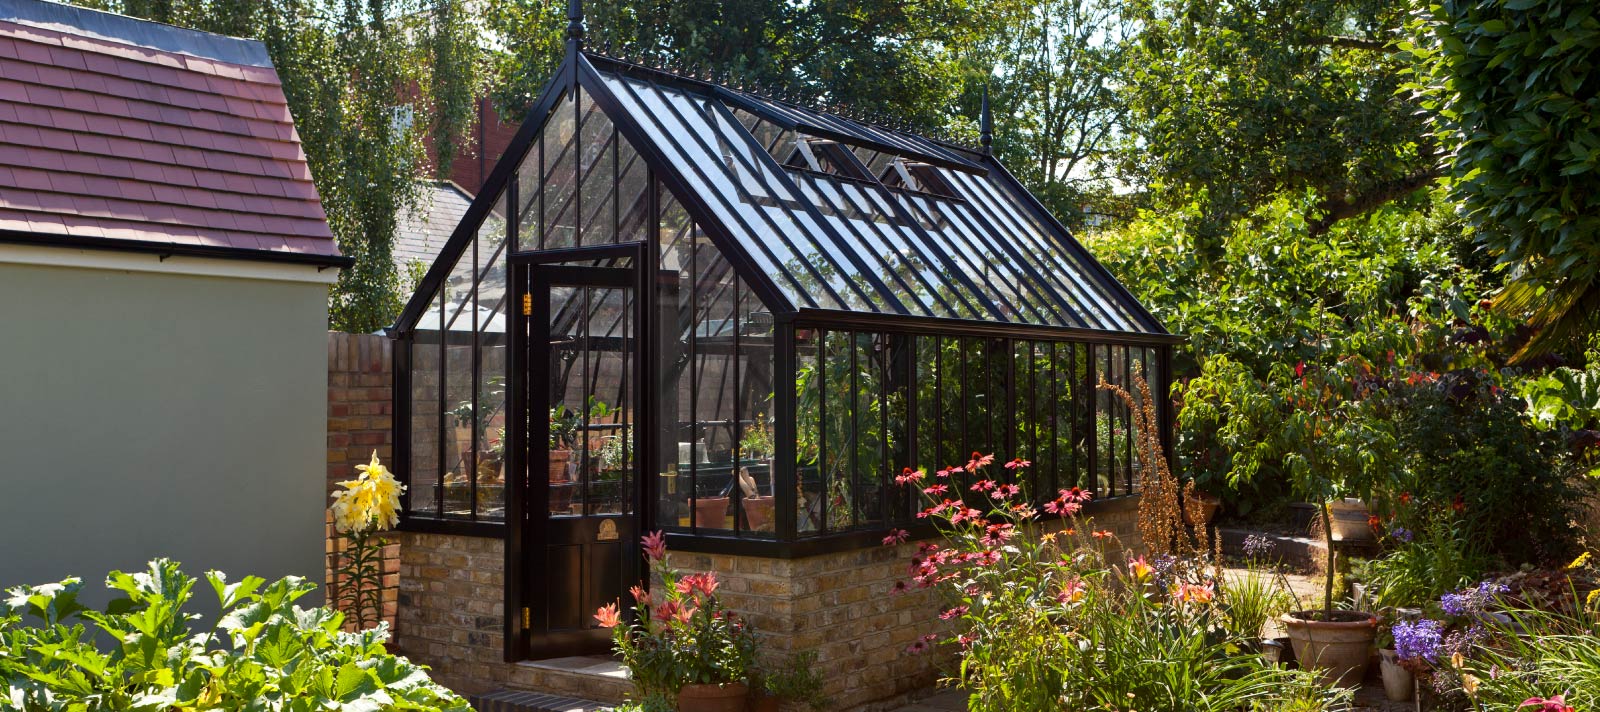 Alitex Scotney greenhouse